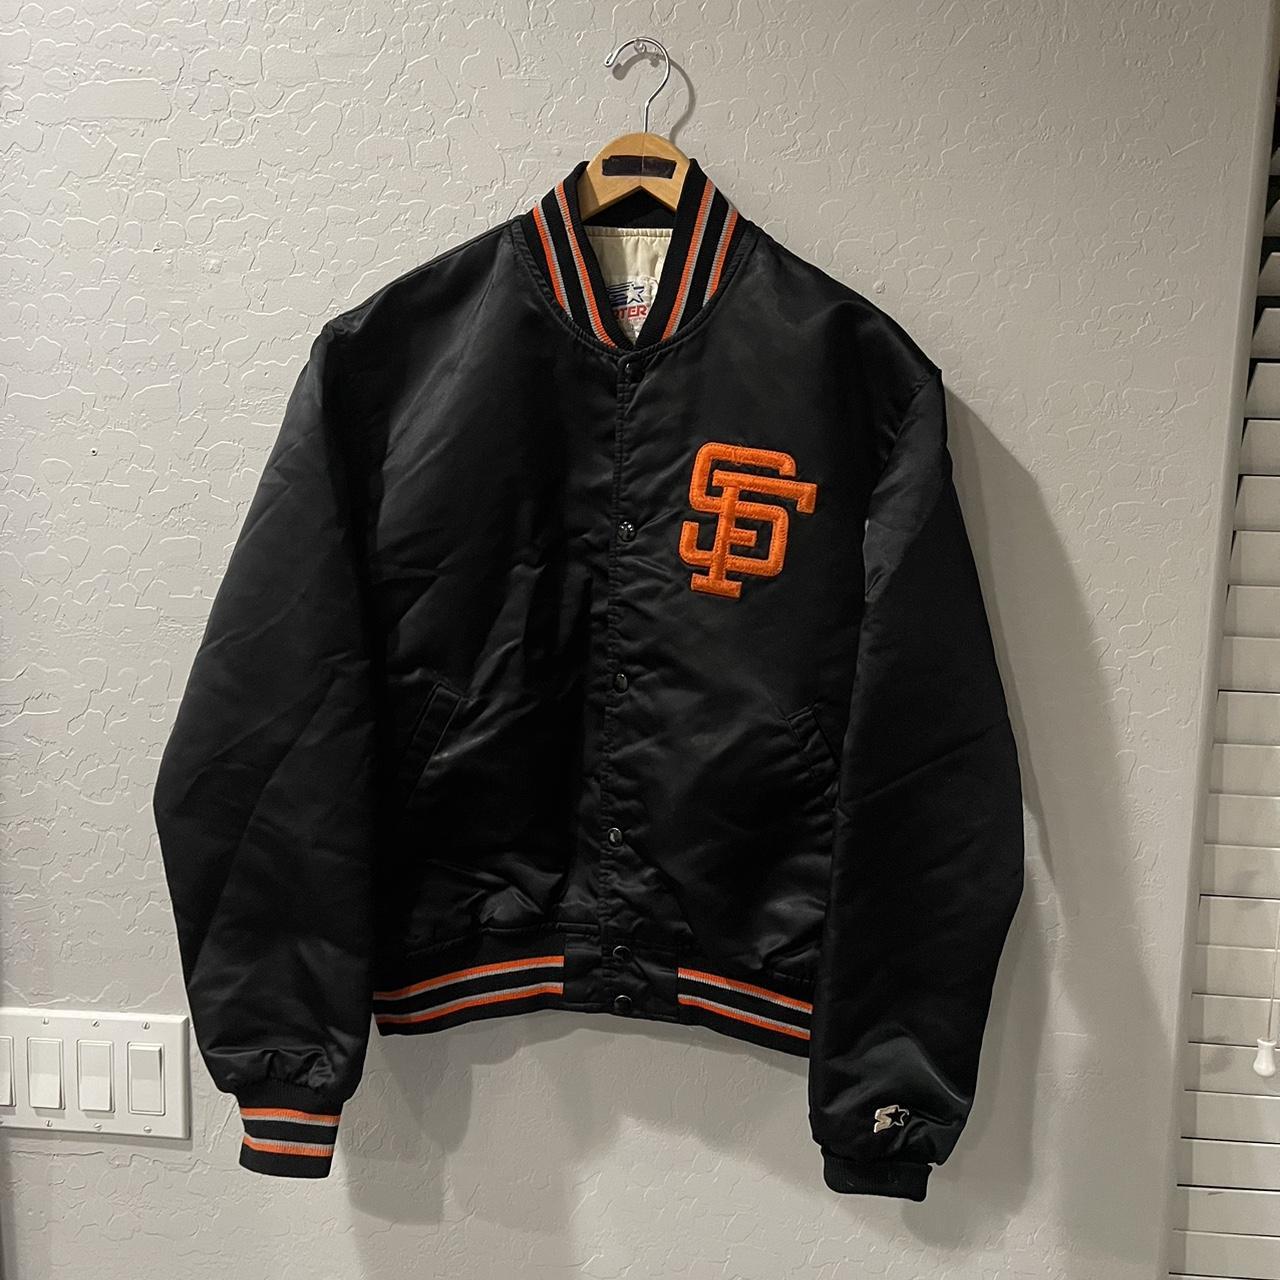 Vintage San Francisco Giants Starter Jacket